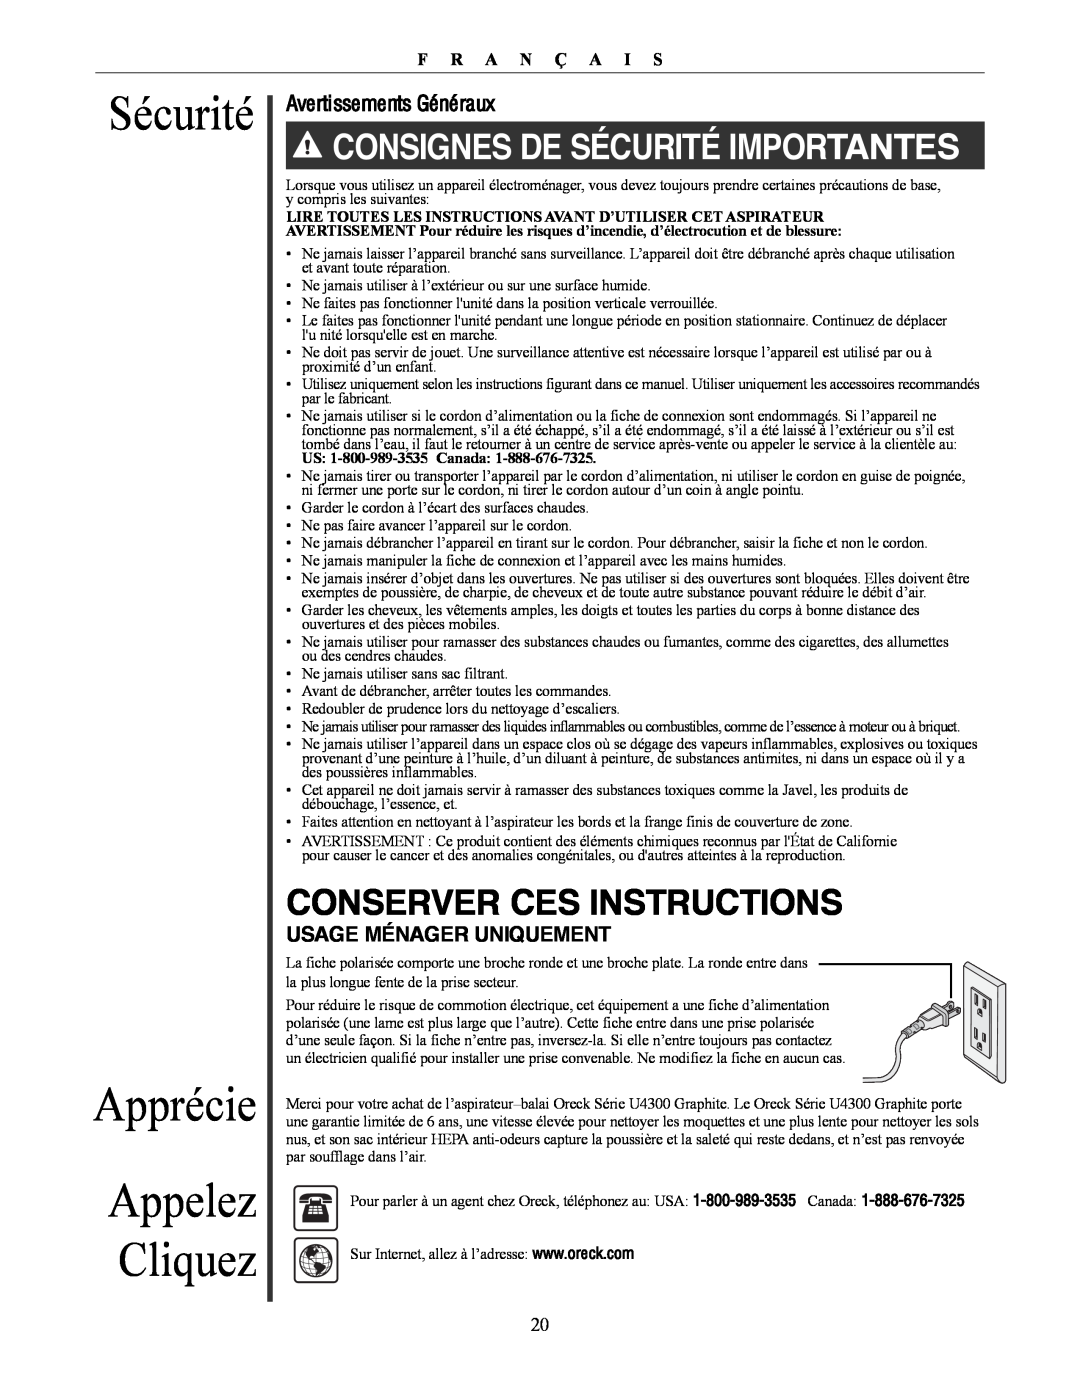 Oreck U4300 manual Sécurité Apprécie, Appelez Cliquez, CONSIGNES DE SéCURITé IMPORTANTES, Conserver Ces Instructions 